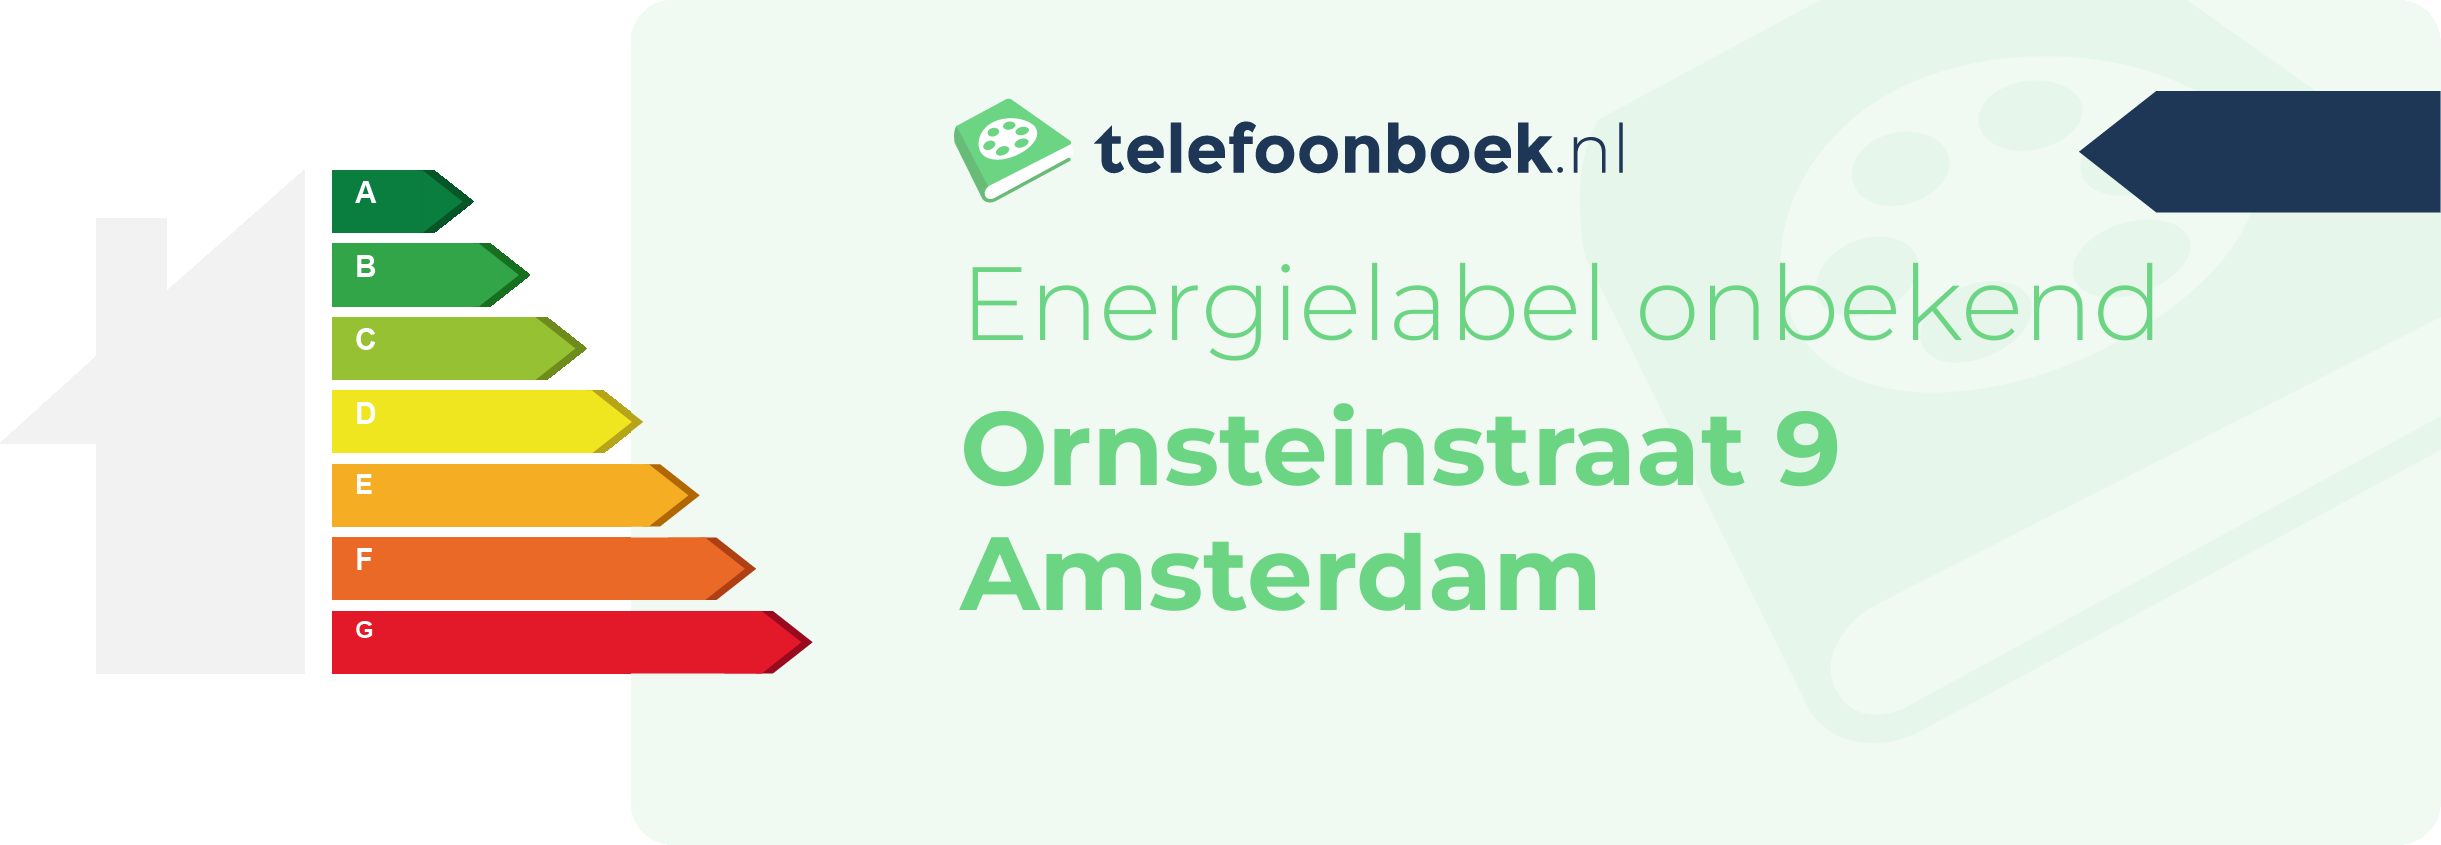 Energielabel Ornsteinstraat 9 Amsterdam